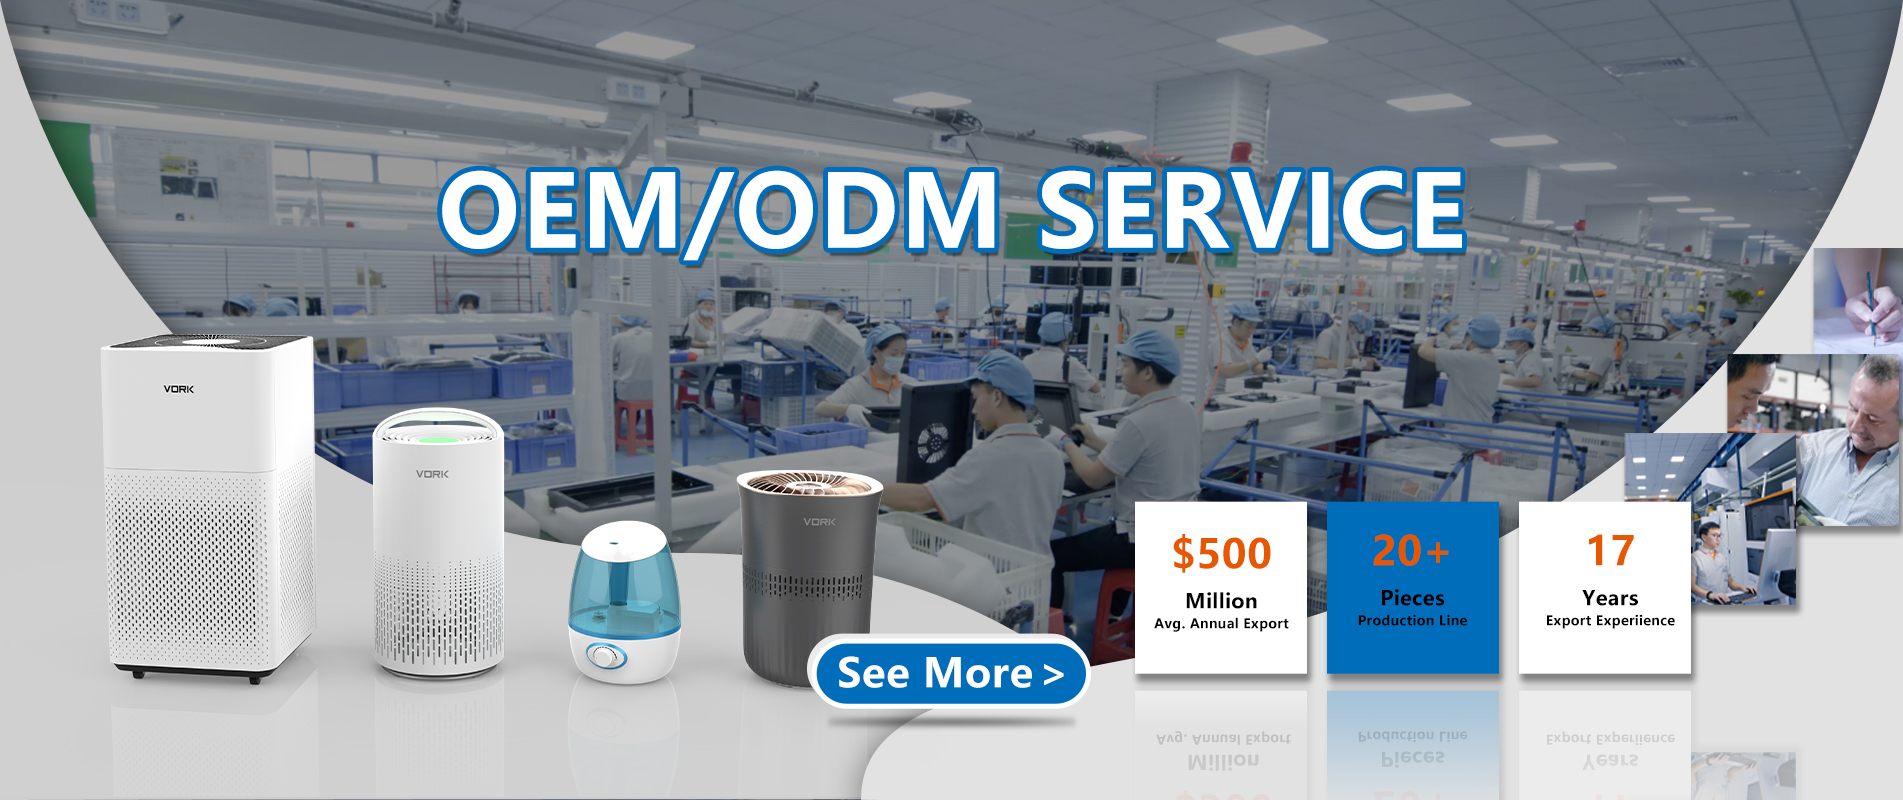 Service OEM/odm